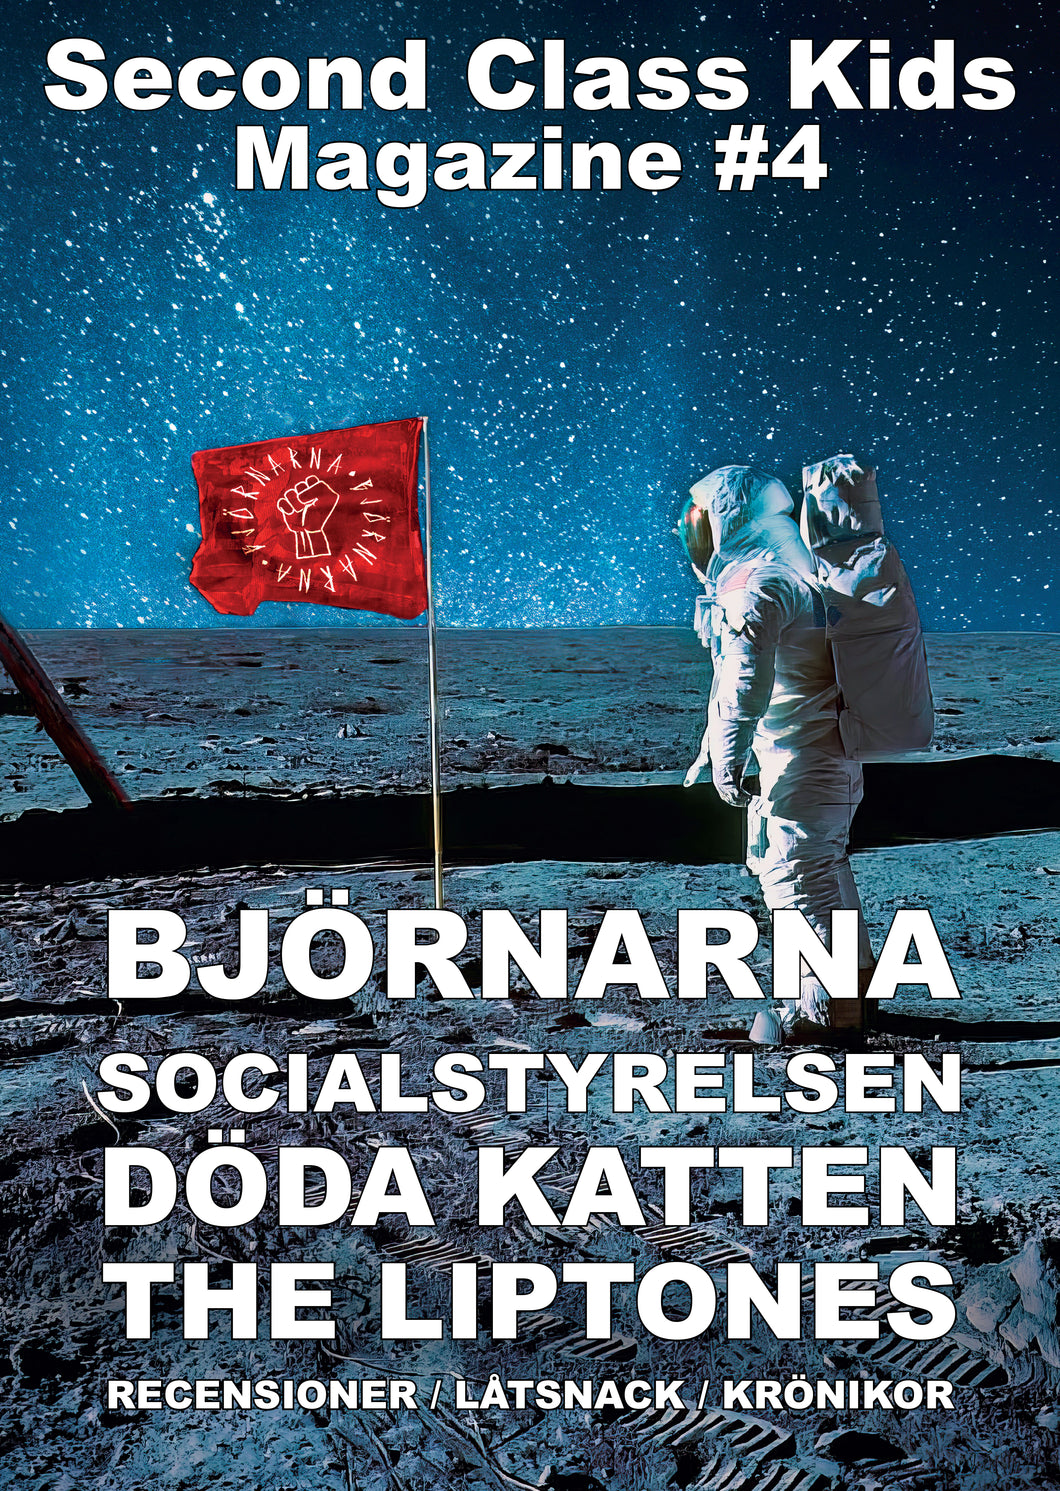 Second Class Kids magazine #4 (Björnarna / Socialstyrelsen / Döda Katten / The Liptones)